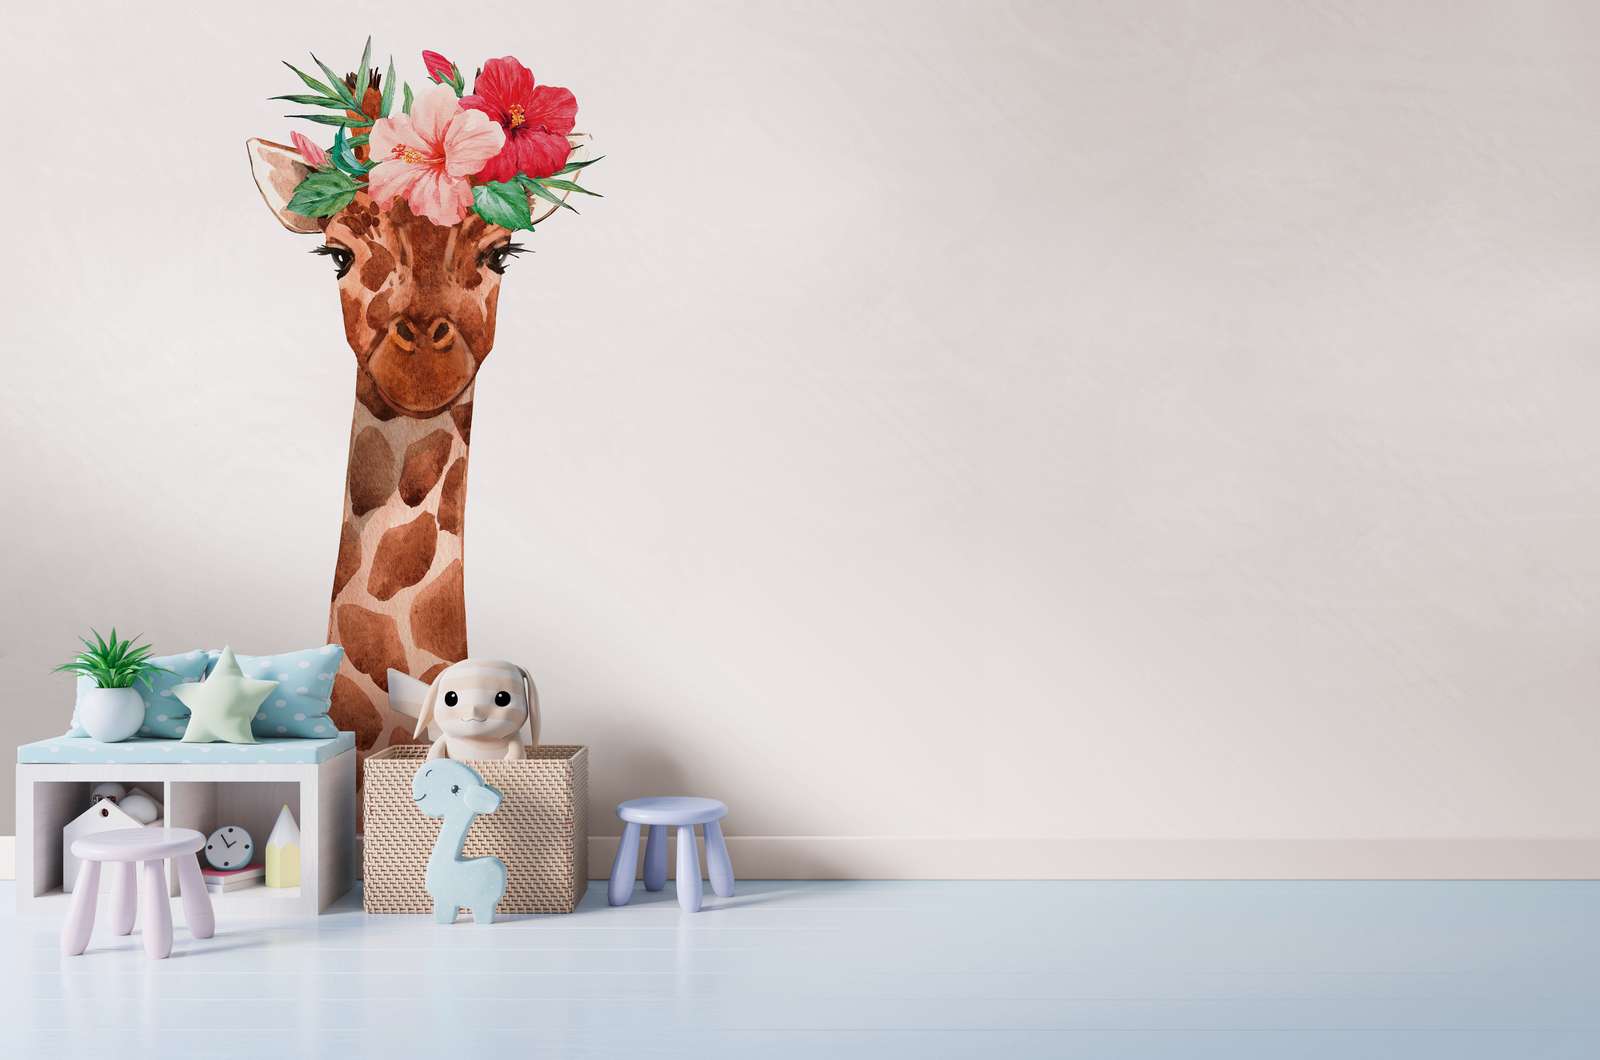             Carta da parati per la camera dei bambini con giraffa e copricapo floreale - Bianco, colorato
        